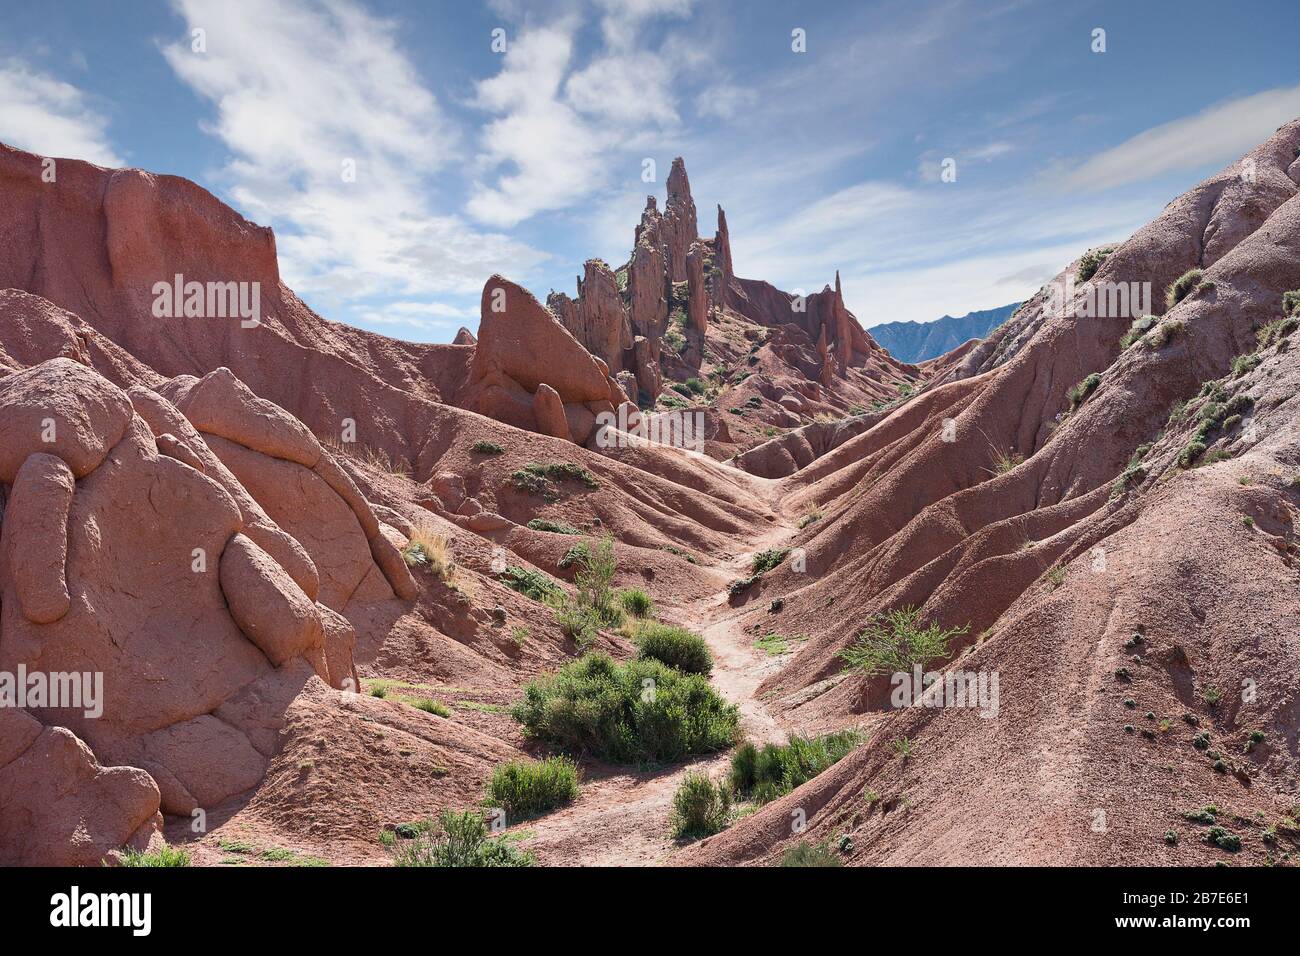 Terrain du Kirghizstan avec des formations rocheuses connues sous le nom de château de Fairy Tale, près de la ville de Kaji dire Banque D'Images